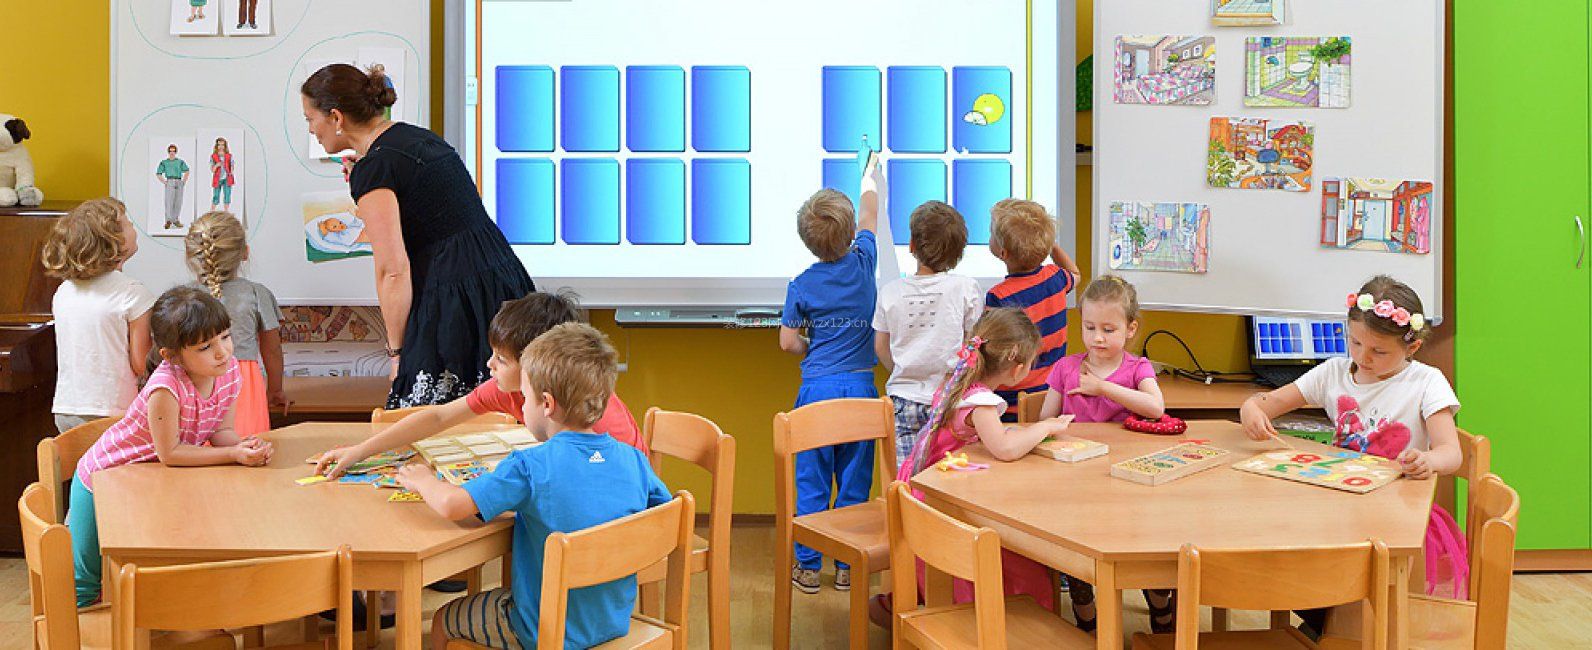 幼儿园中班教室环境布置效果图